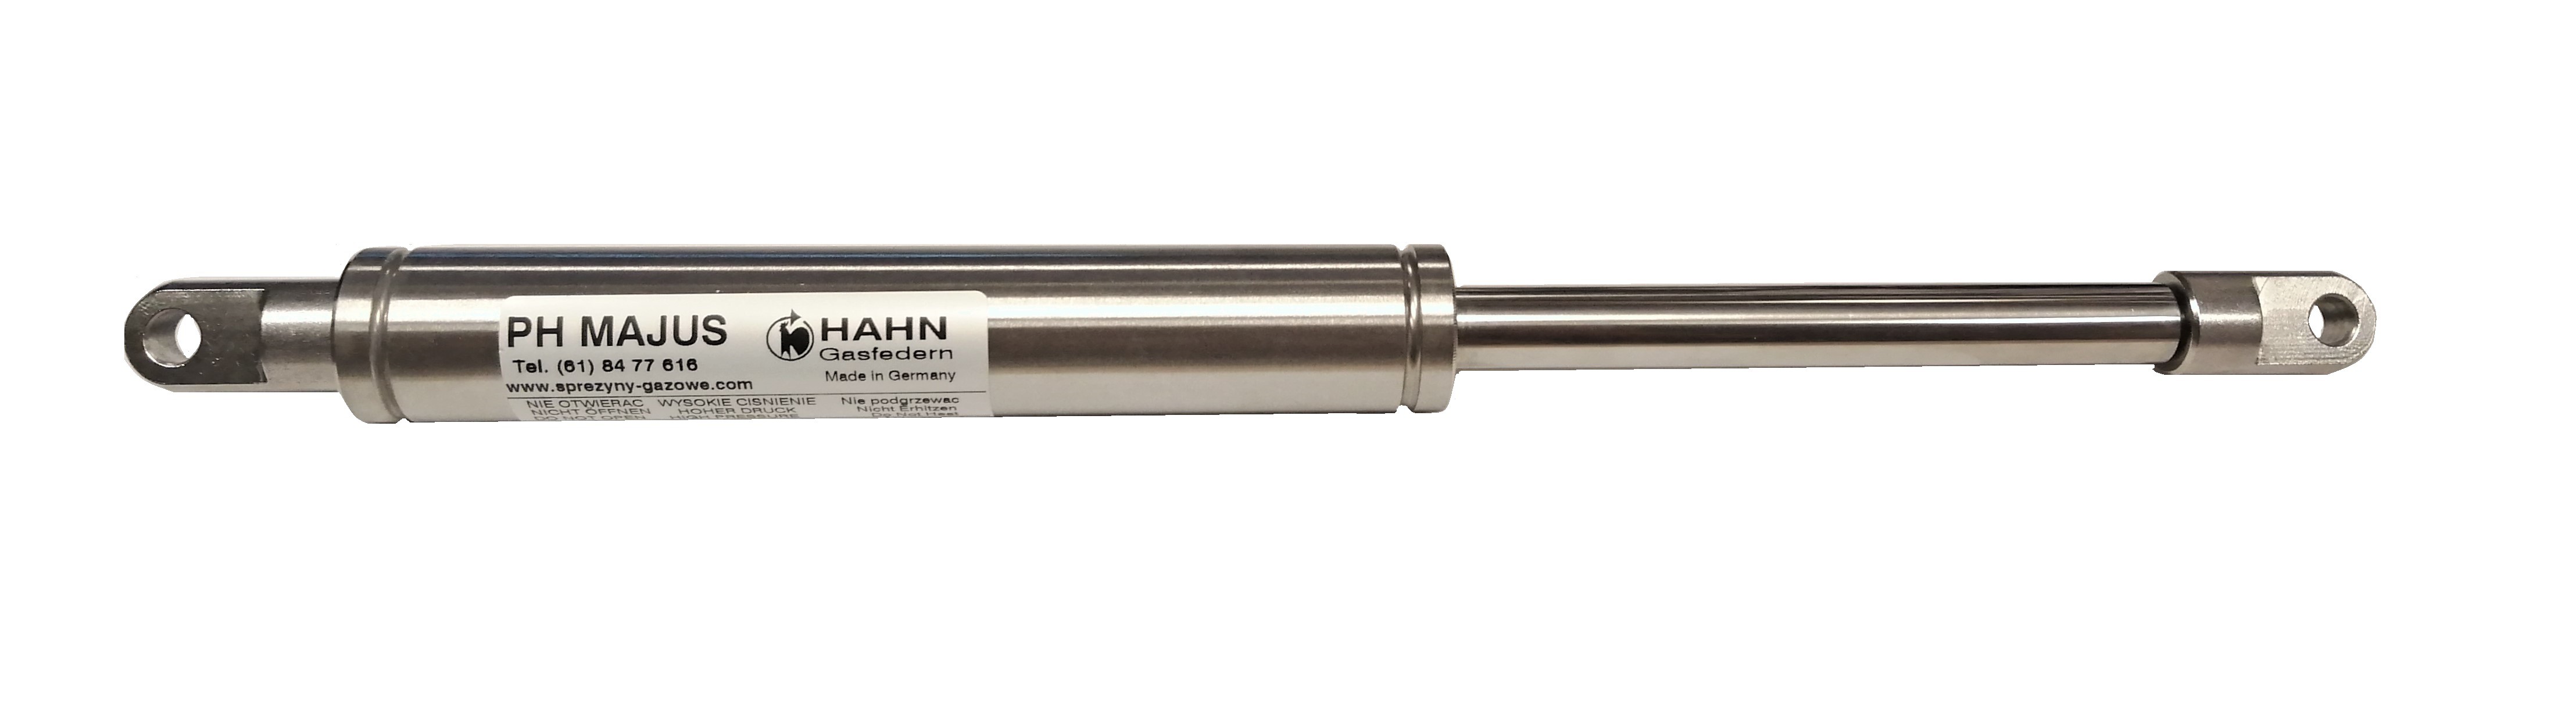 Sprężyna gazowa (HAHN Gasfedern) pchająca stal nierdzewna długość 350mm skok 120mm siła 150N-2500N